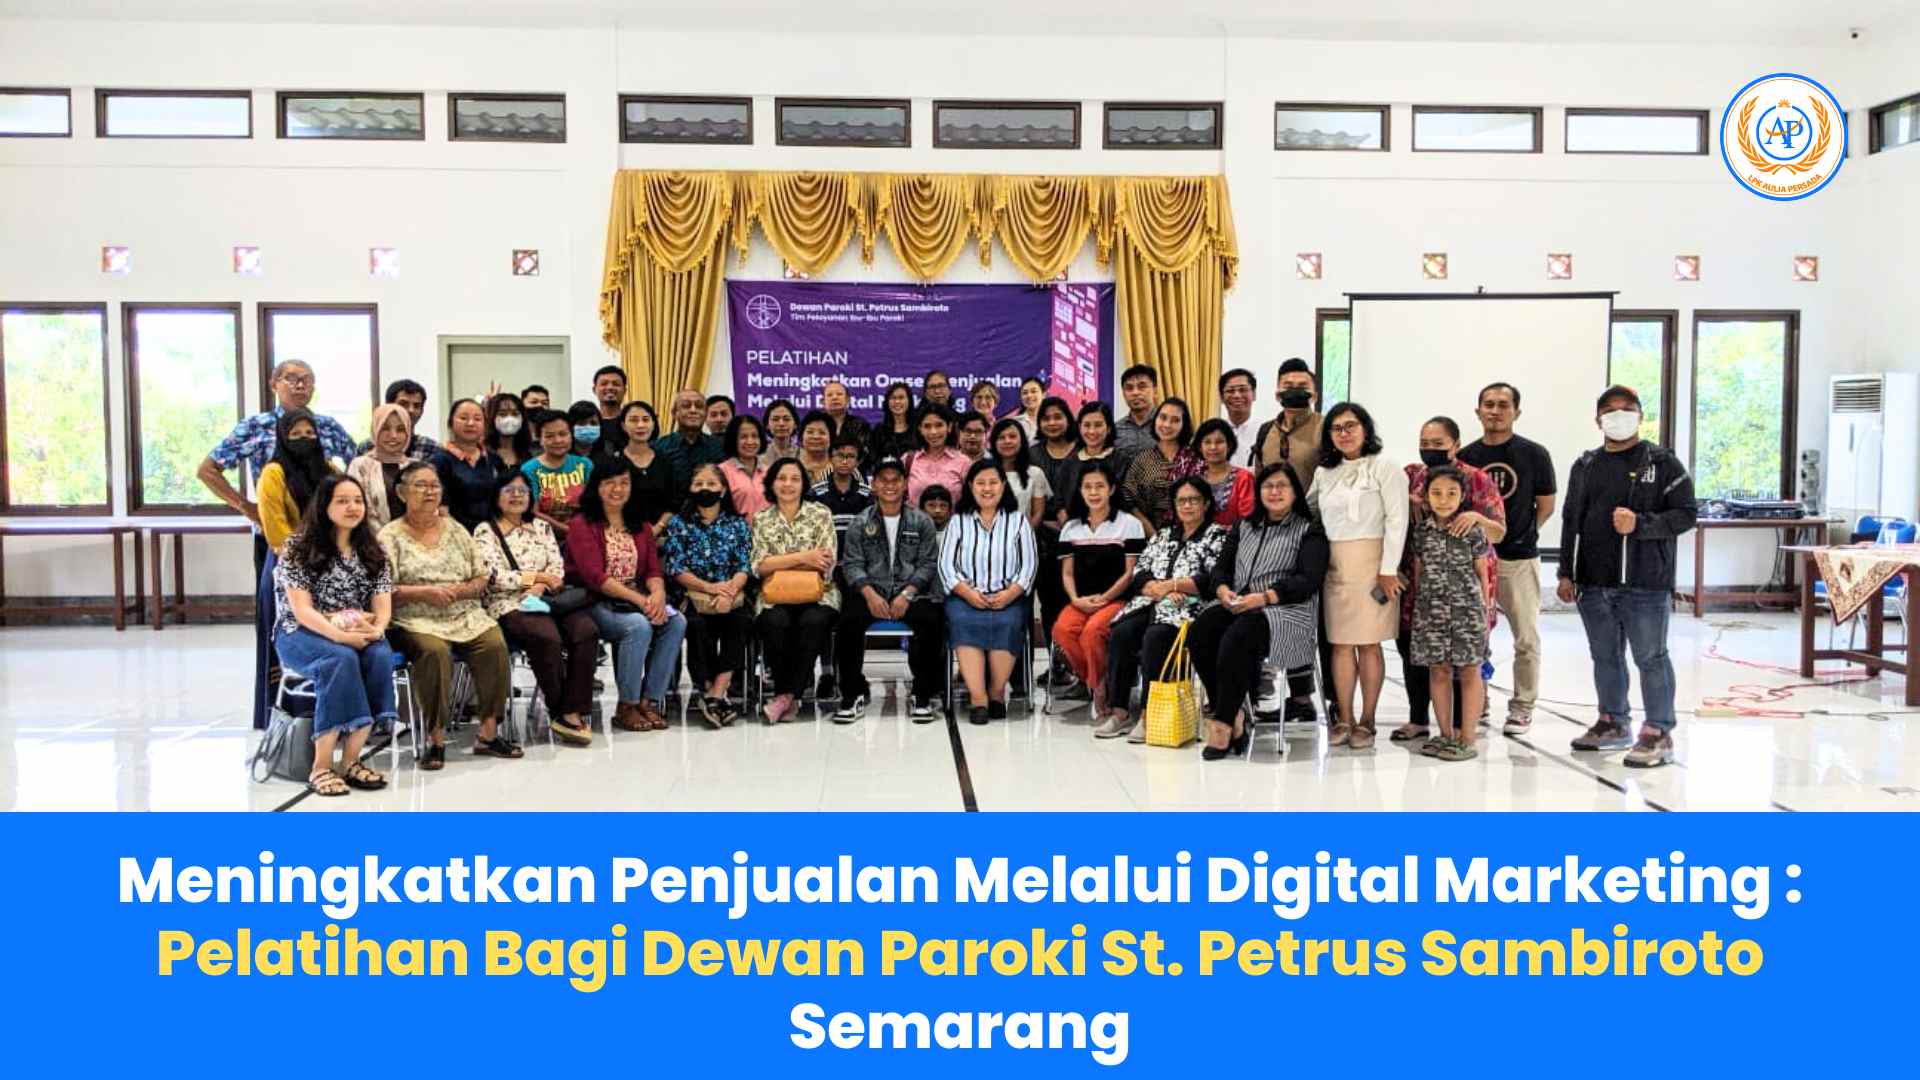 Meningkatkan Penjualan Melalui Digital Marketing: Manfaat Pelatihan Bagi Dewan Paroki St. Petrus Sambiroto Semarang